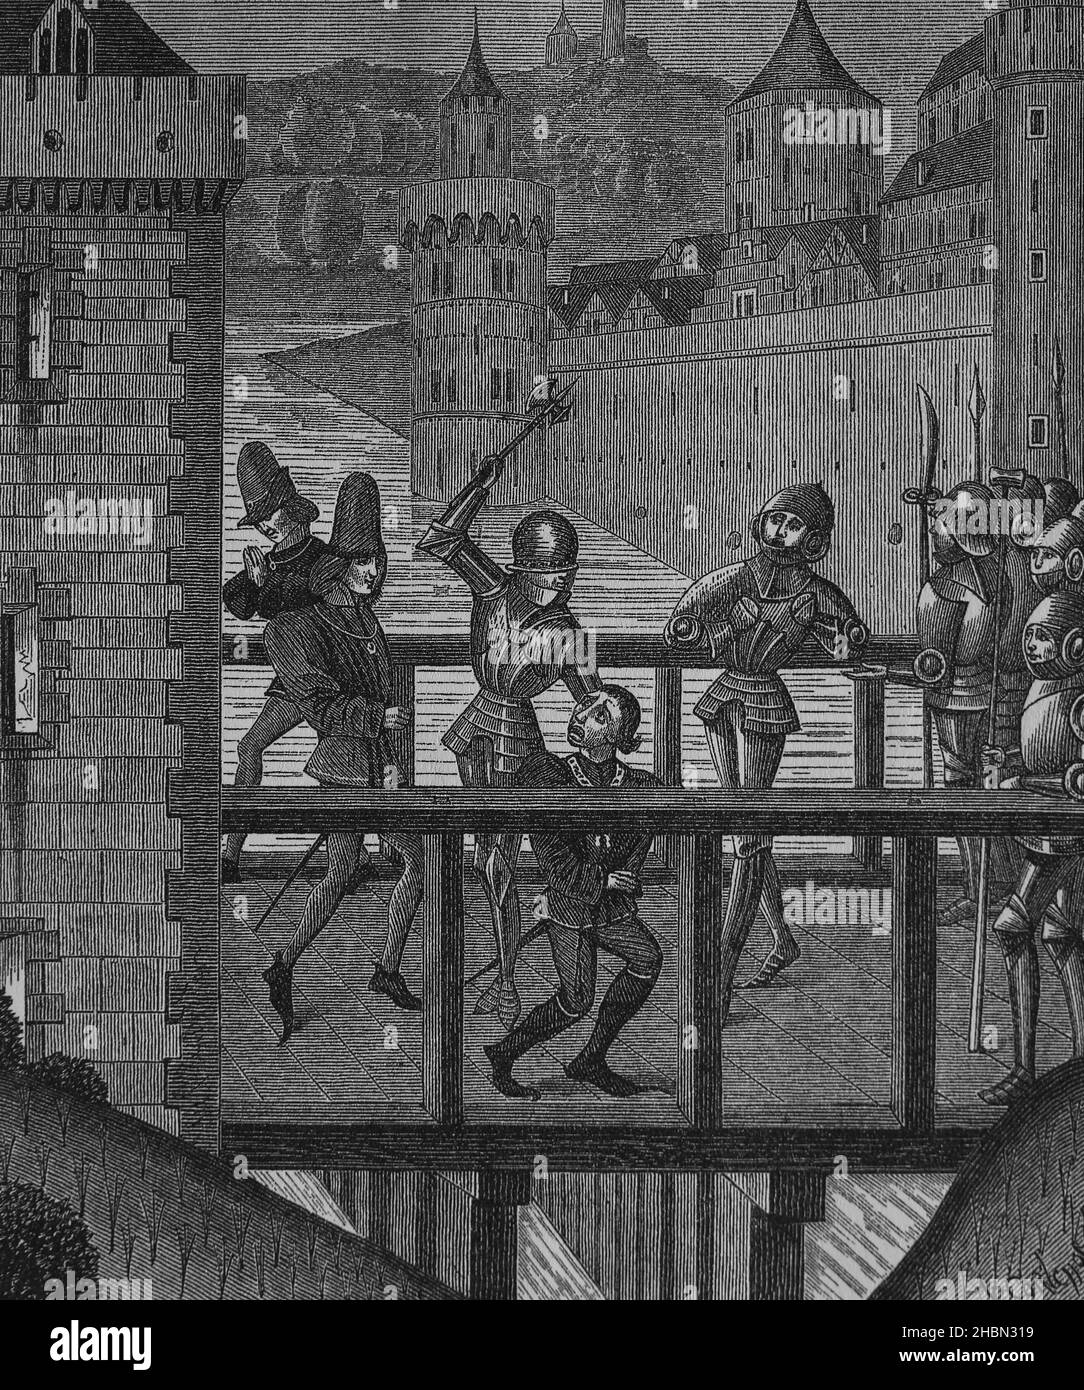 Assassination of the Duke of Burgundy, John the Fearless. on Bridge of Montereau, 1419. Chronicles of Monstrelet, 15th century. Stock Photo